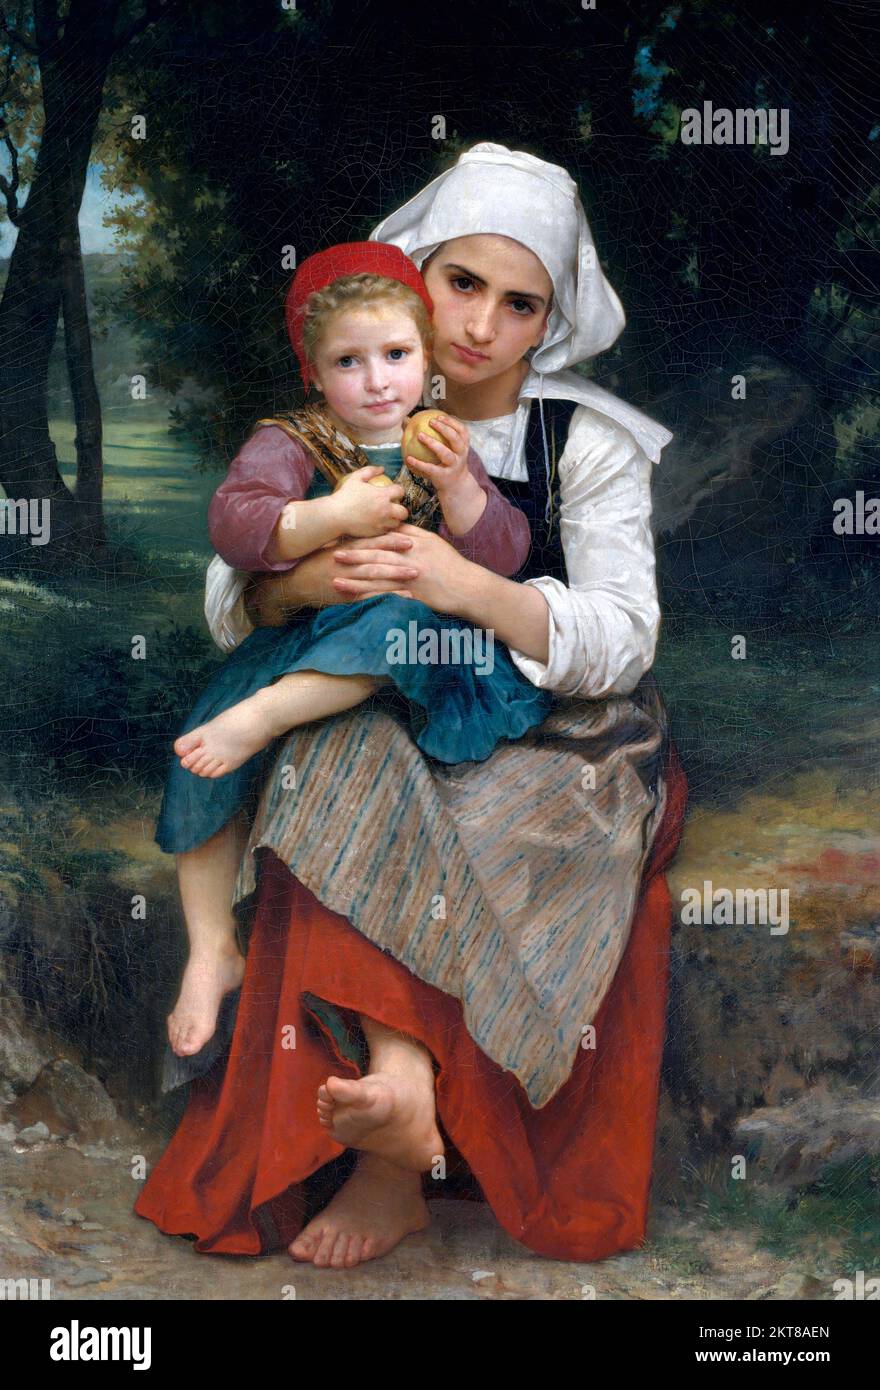 Frère breton et sœur de William-Adolphe Bouguereau (1825-1905), huile sur toile, 1871 Banque D'Images